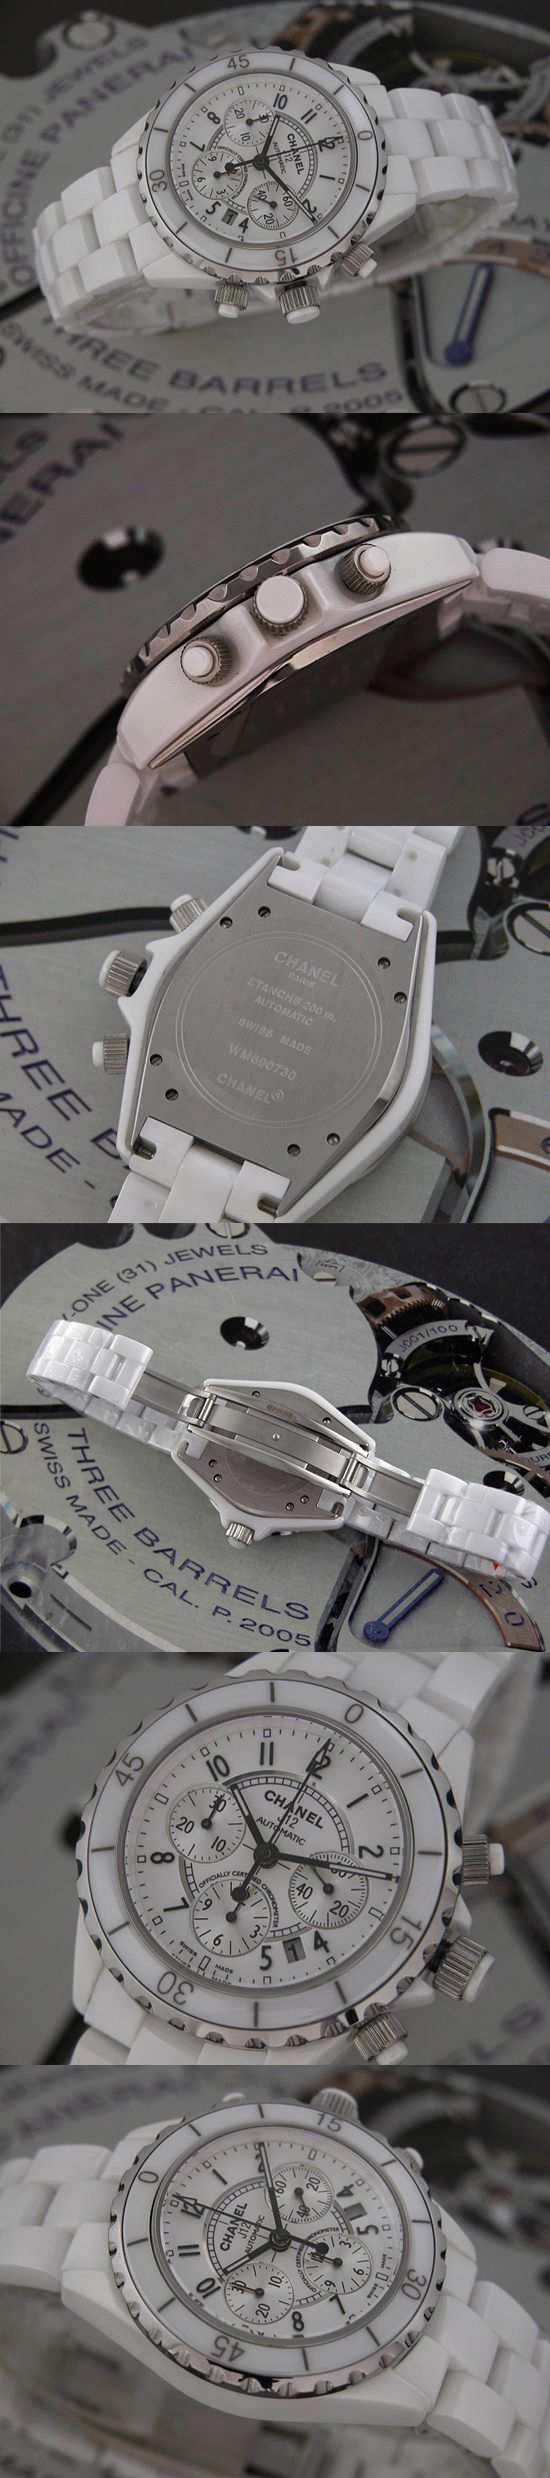 おしゃれなブランド時計がシャネル-CHANEL-H1007-ay-J12-男性用を提供します.